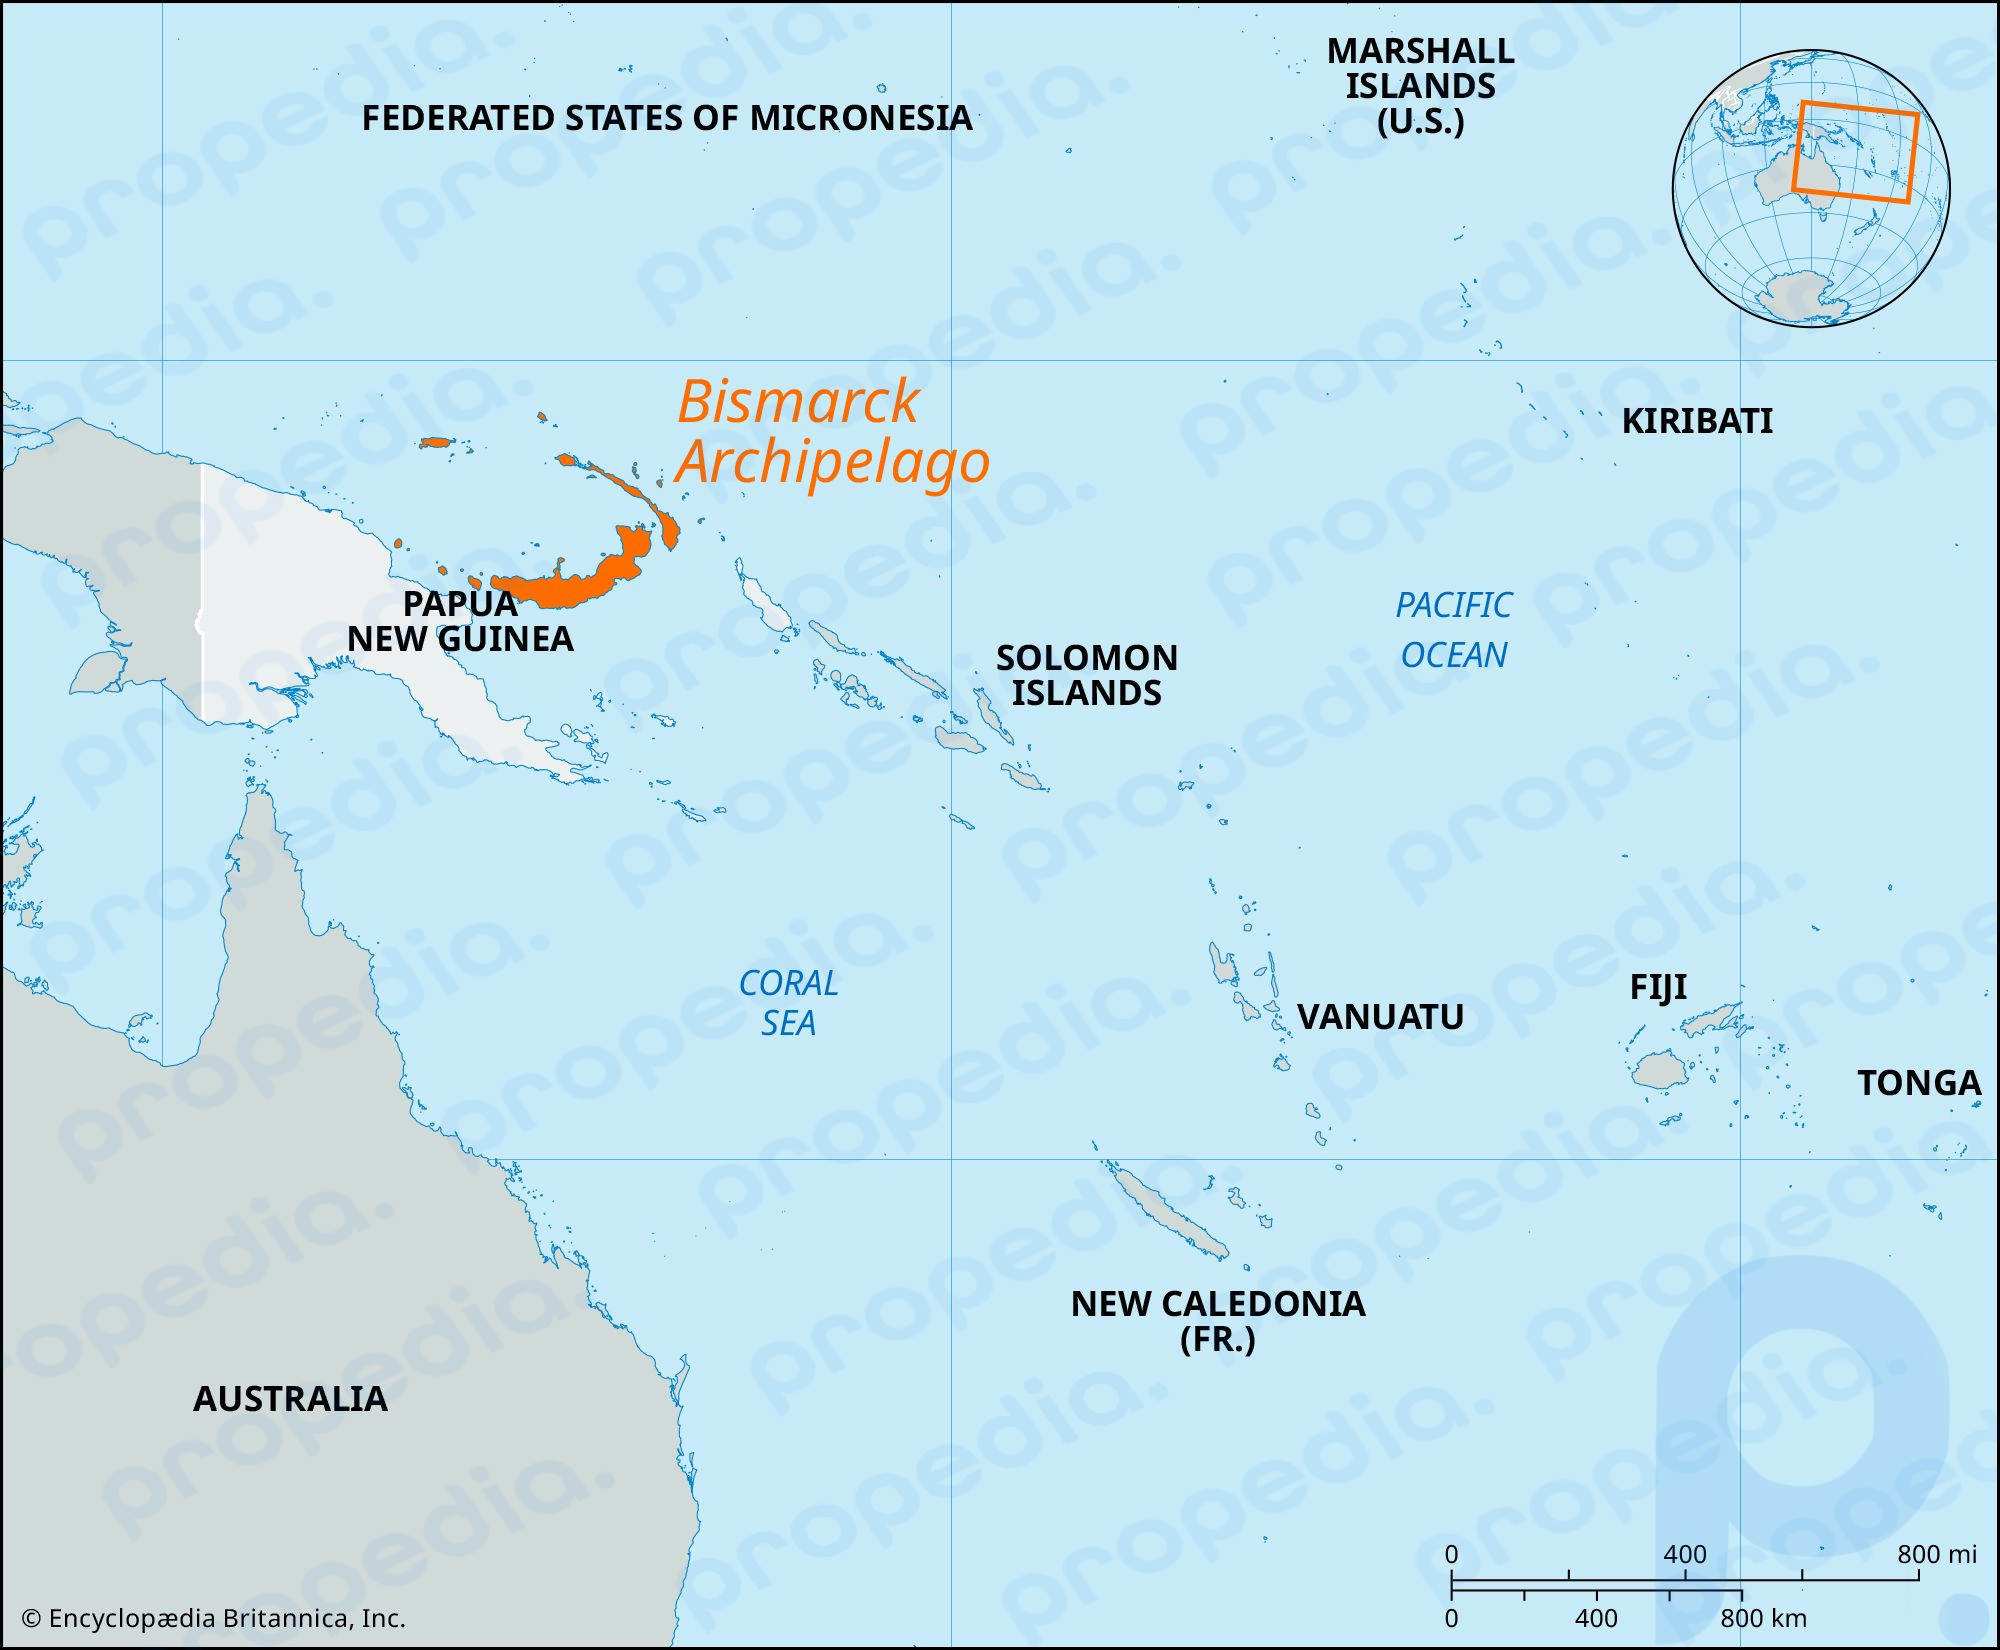 Архипелаг Бисмарка, Папуа-Новая Гвинея